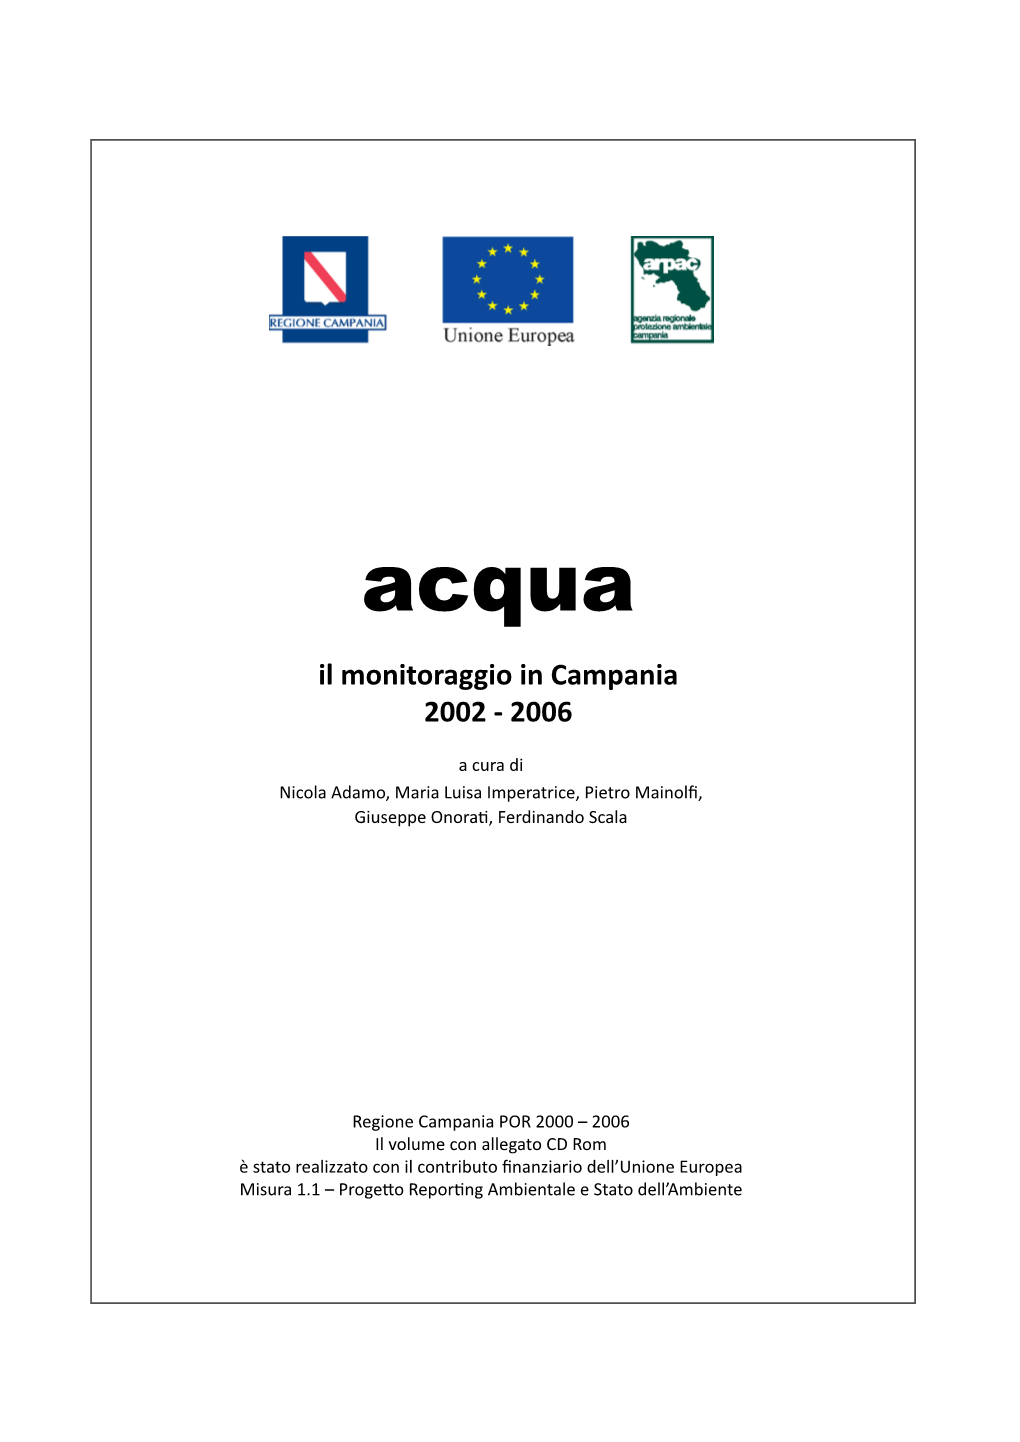 Report Acqua Il Monitoraggio in Campania 2002